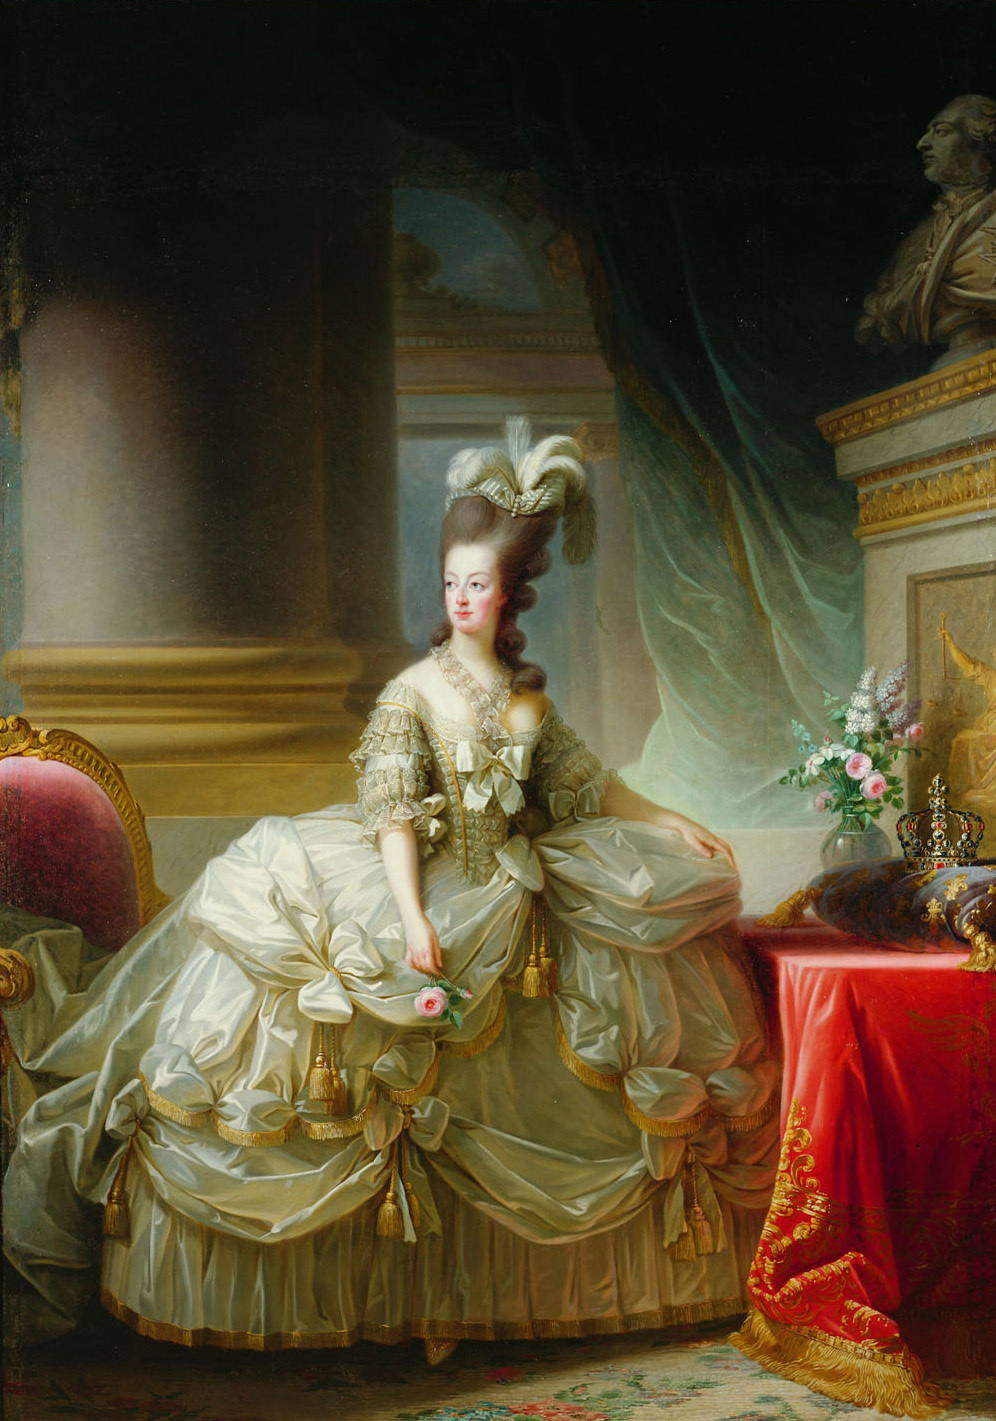 फ्रांस की रानी, आर्चडचेस मैरी एंटोनेट by Élisabeth Vigee Le Brun - १७७८ - २७६ x १९३.५ से.मी. 